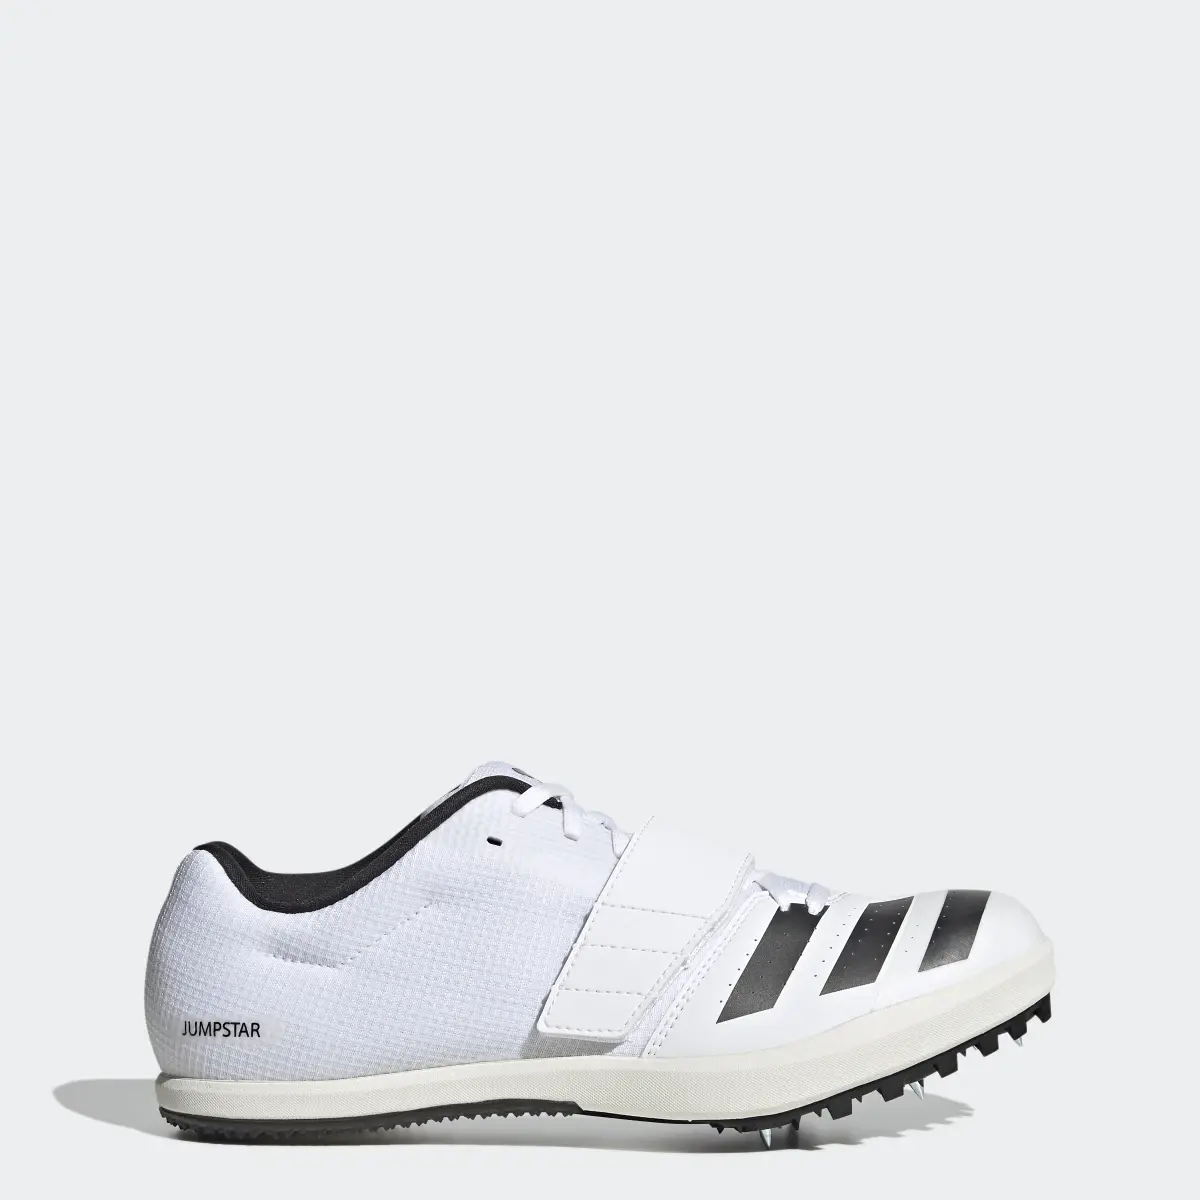 Adidas Jumpstar Shoes. 1